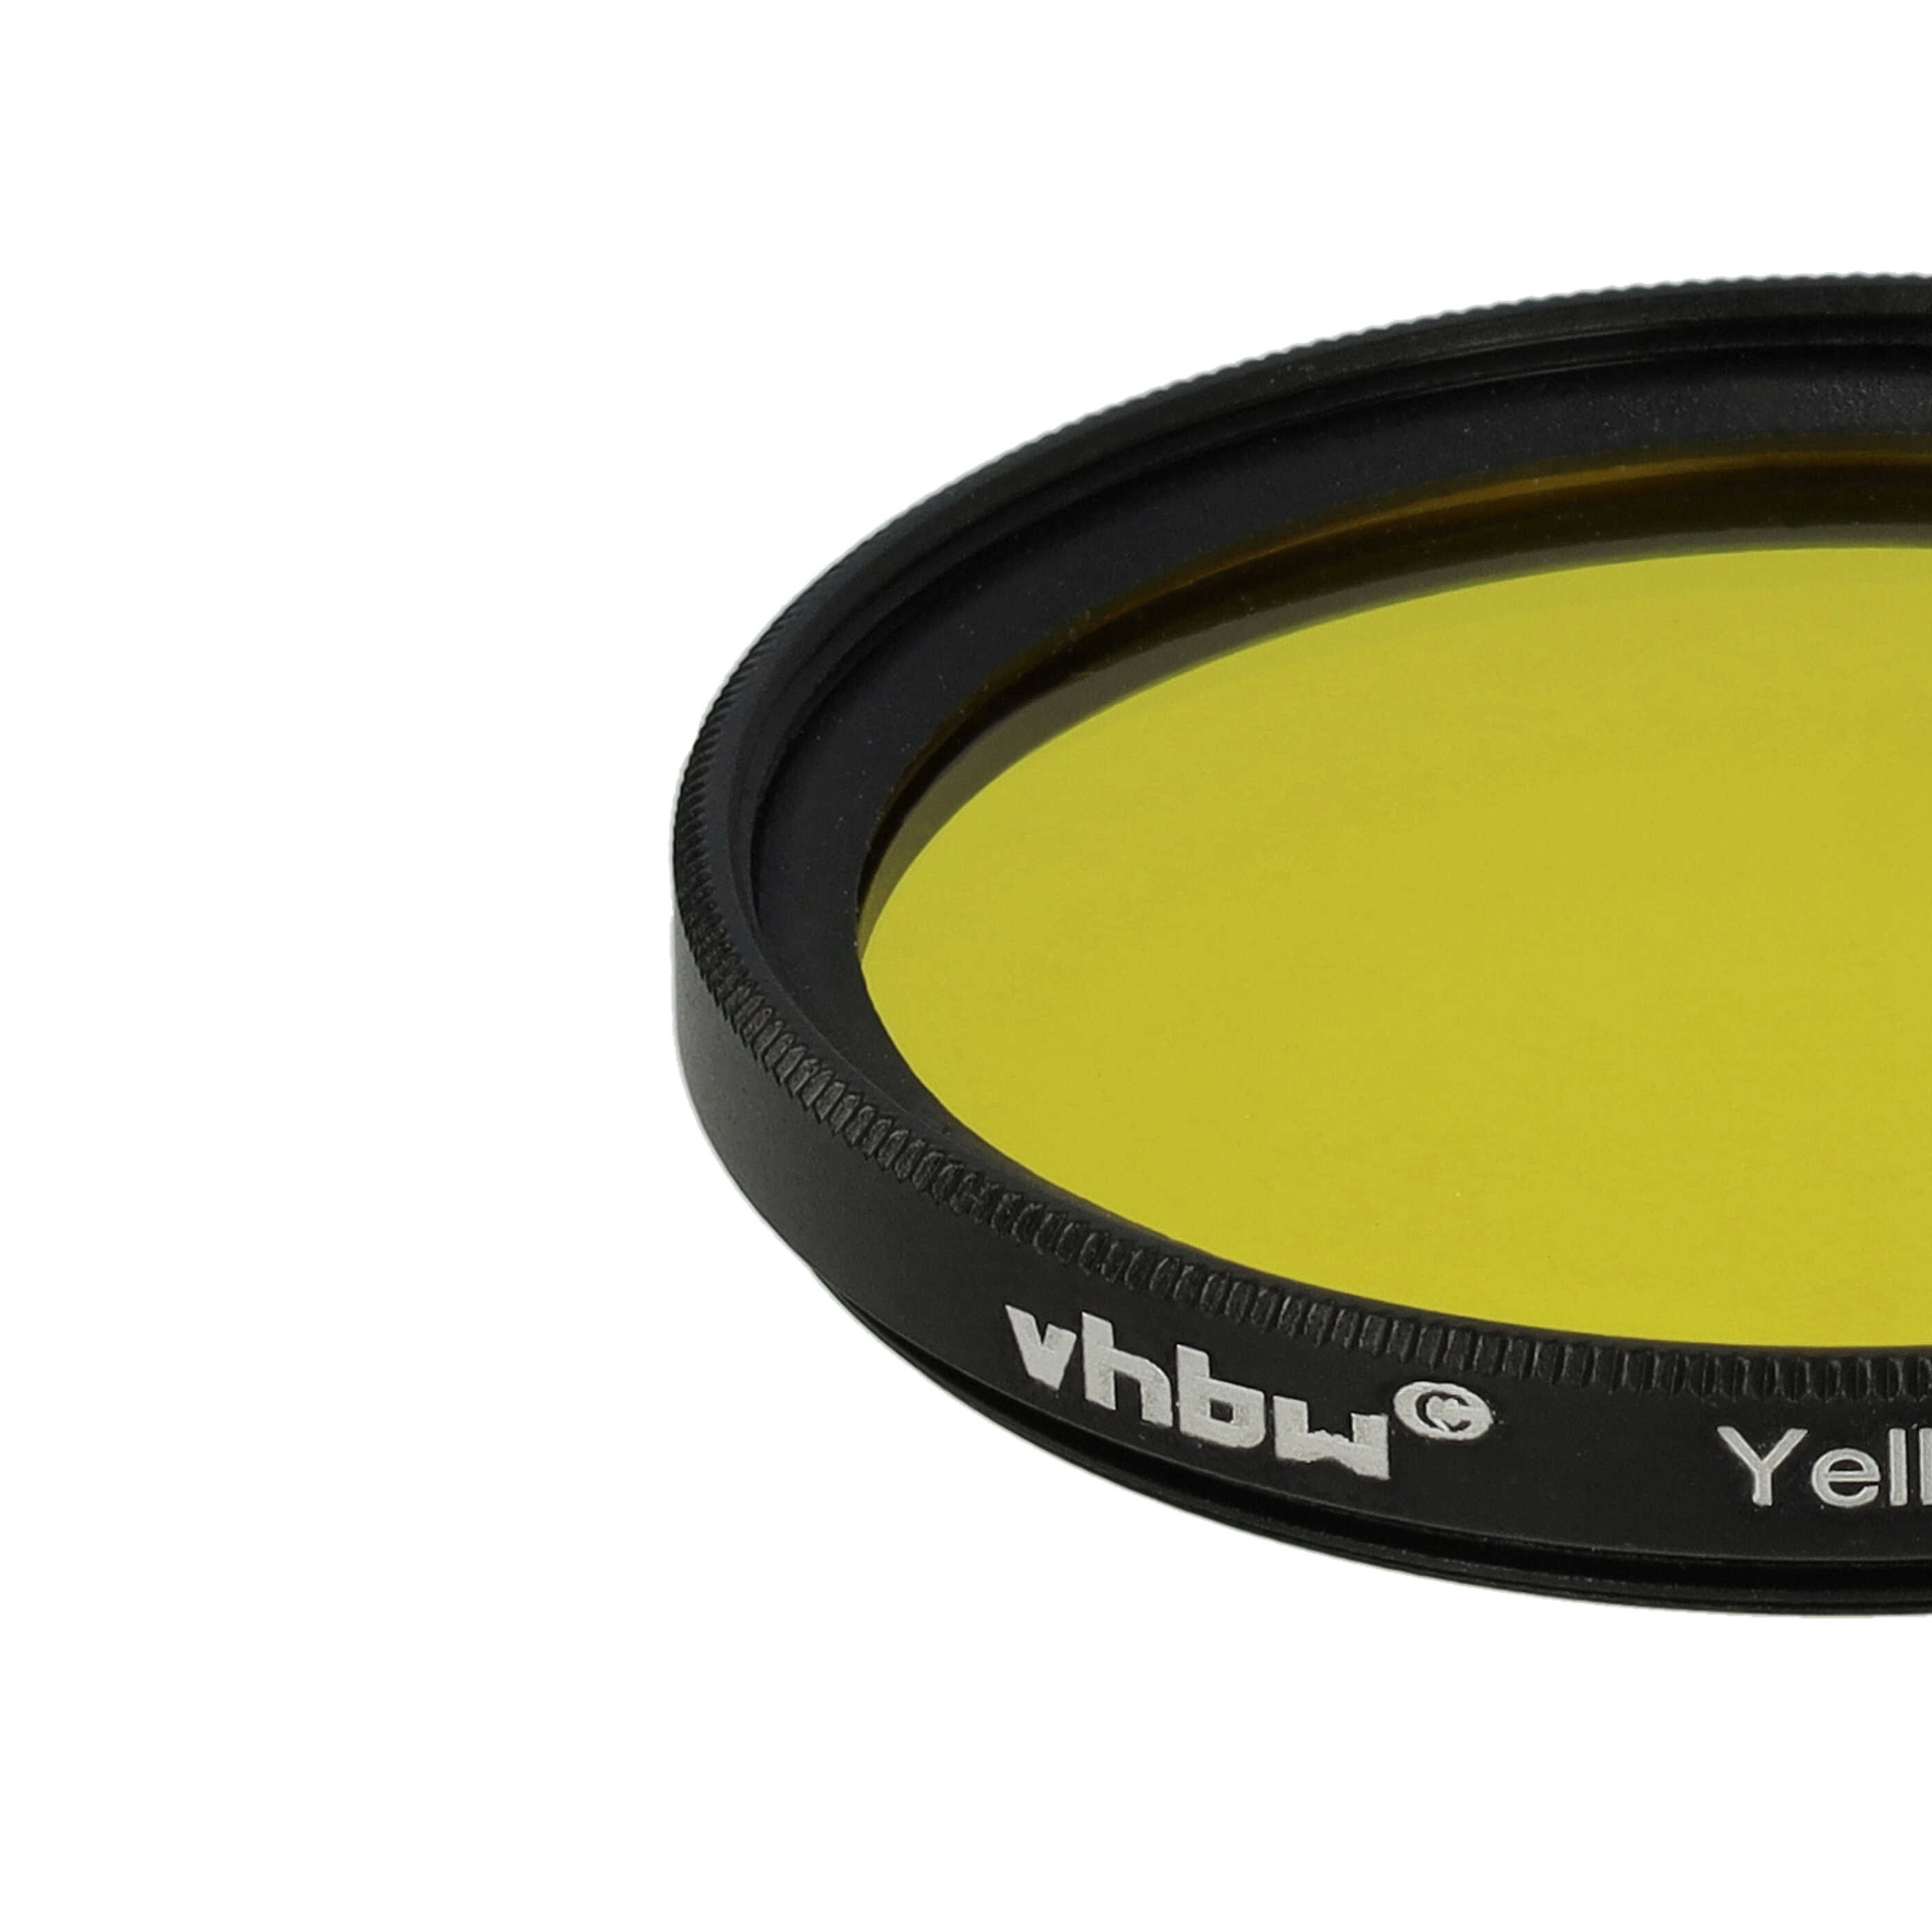 Filtr fotograficzny na obiektywy z gwintem 46 mm - filtr żółty